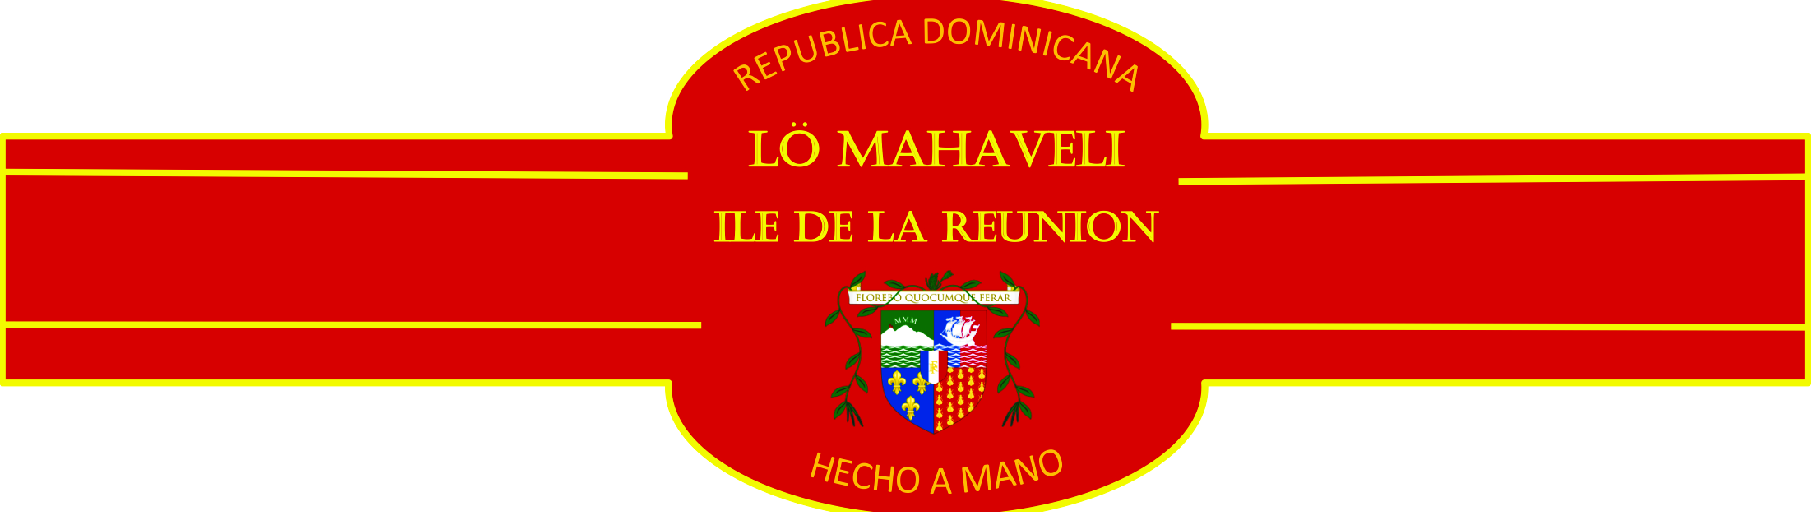 LO MAHAVELI Logo 2